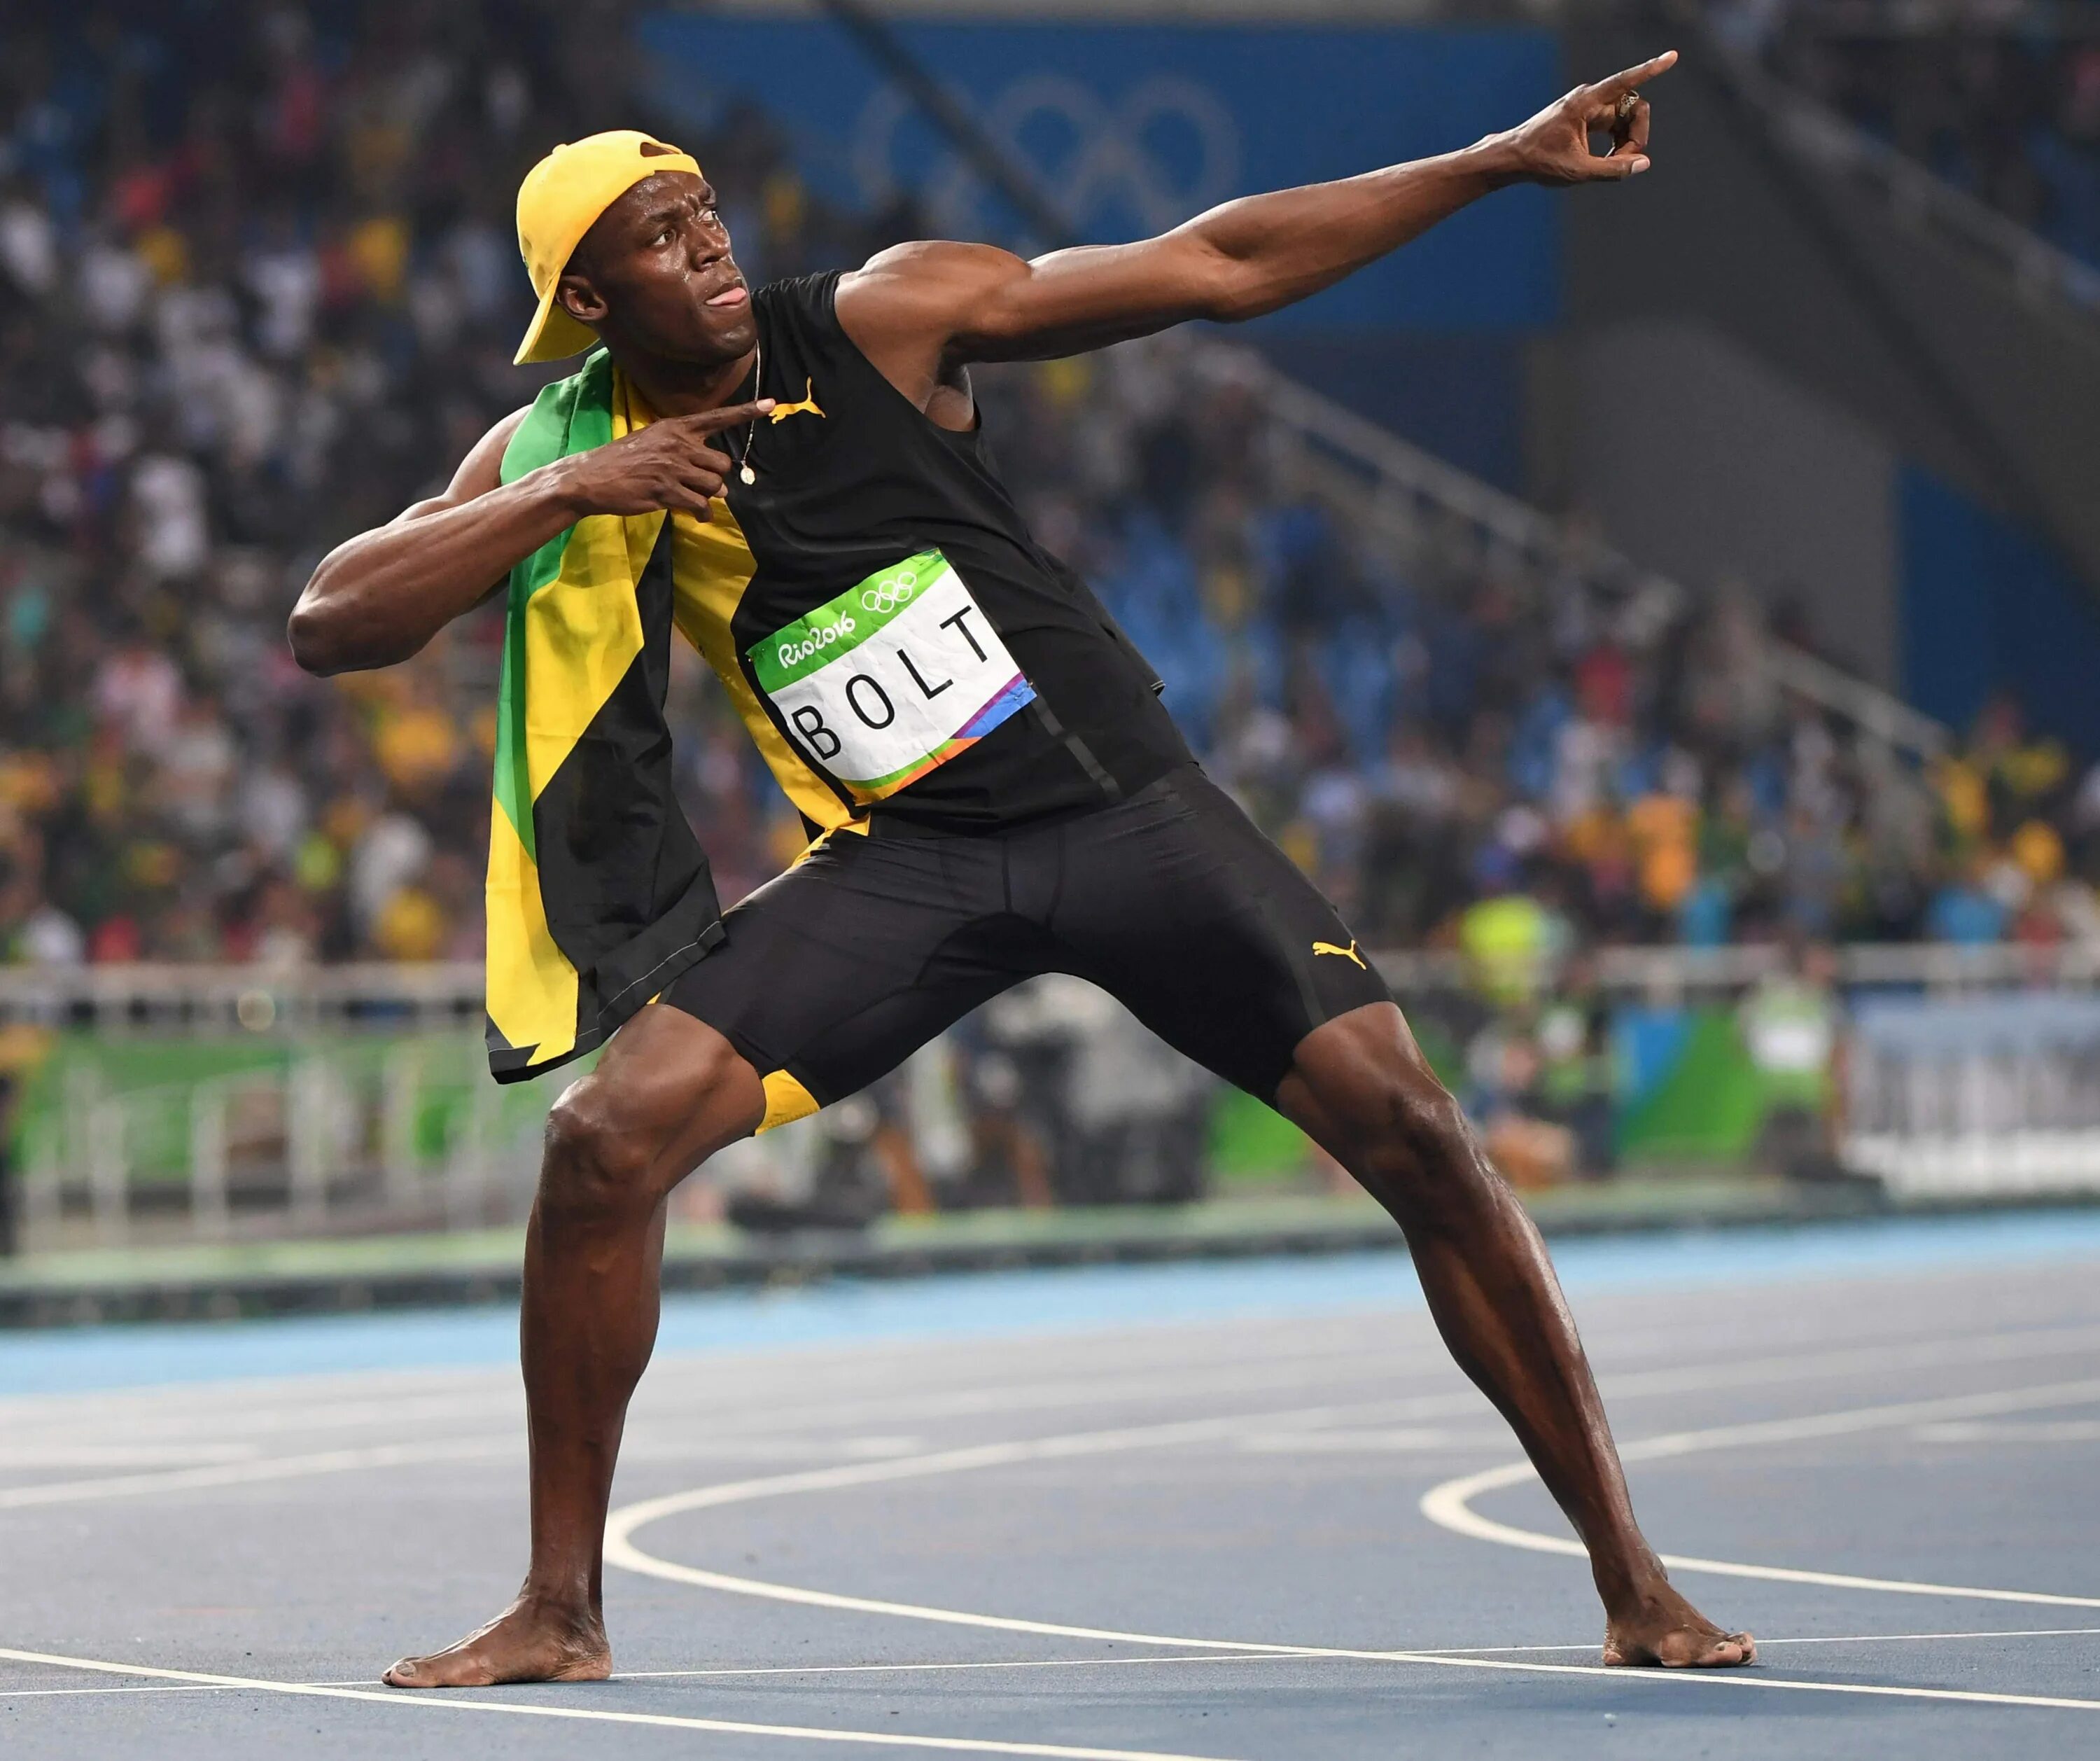 Step he took. Усейн болт. Усейн болт Ямайка. Усейн болт 100м. Спринтер Усэйн болт.